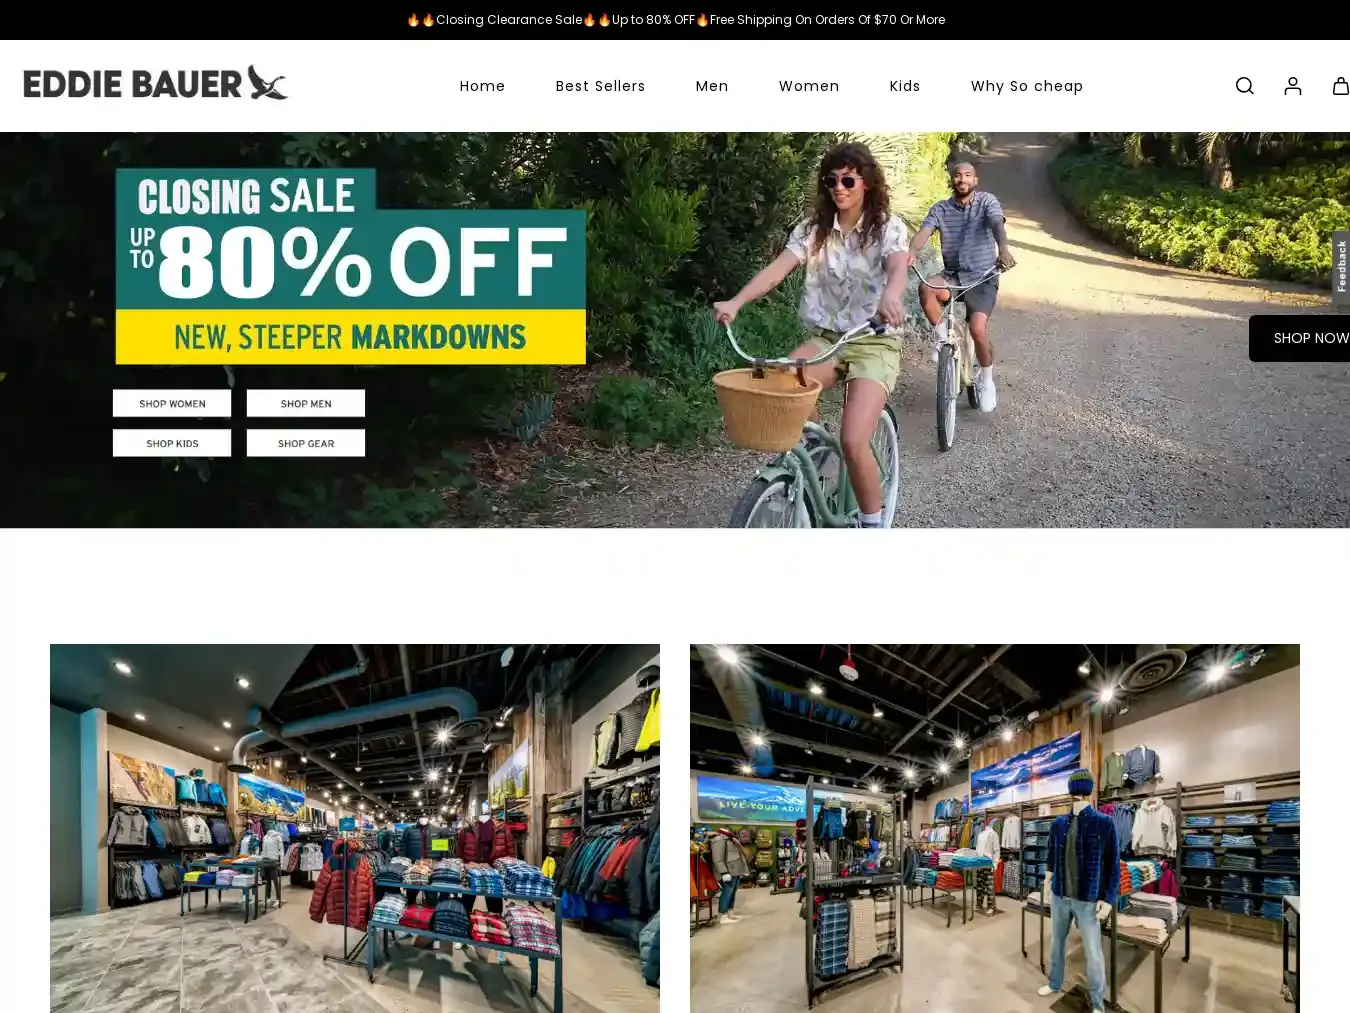 Eddiebauerus.shop Fraudulent Non-Delivery website.